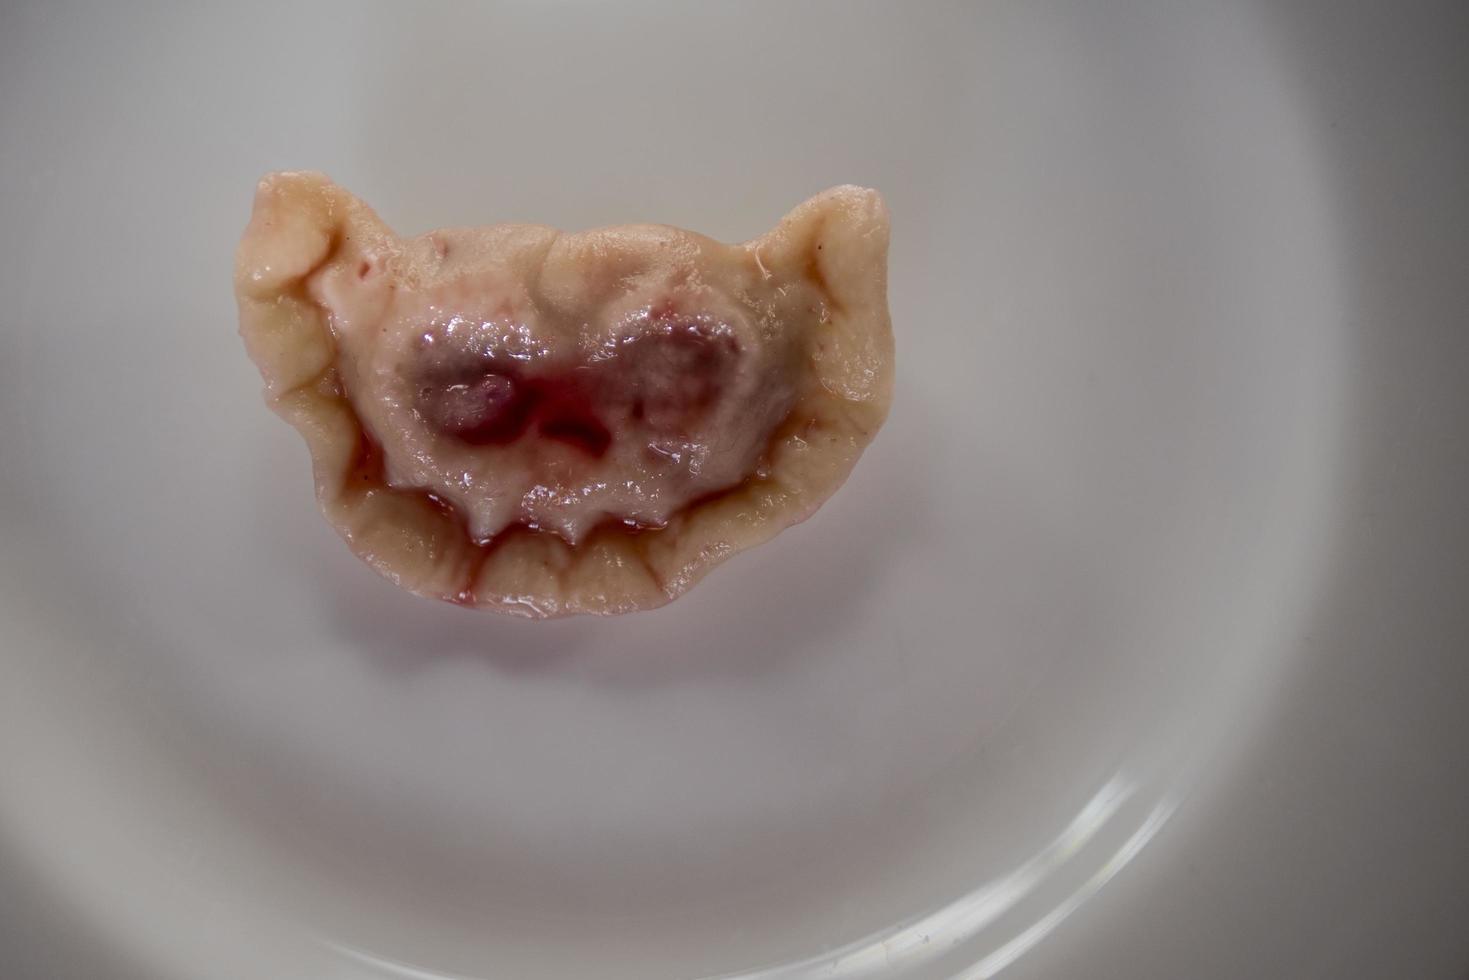 dumplings met kersen in de vorm van een vreselijke snuit dracula vampier foto